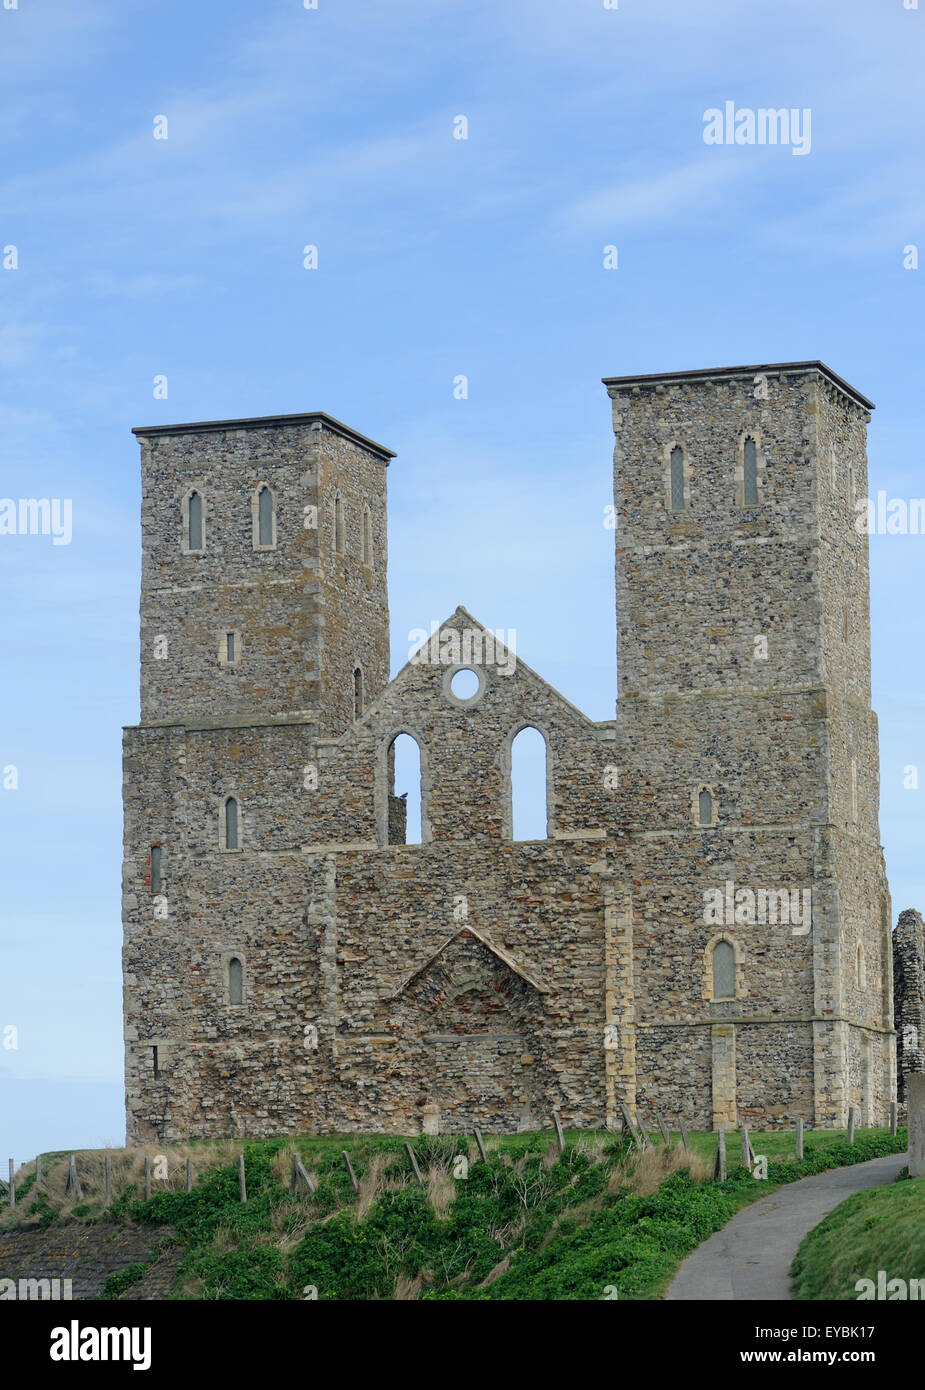 Les ruines de l'église médiévale de St Mary Reculver ci-dessus. Reculver, Kent, UK, Banque D'Images